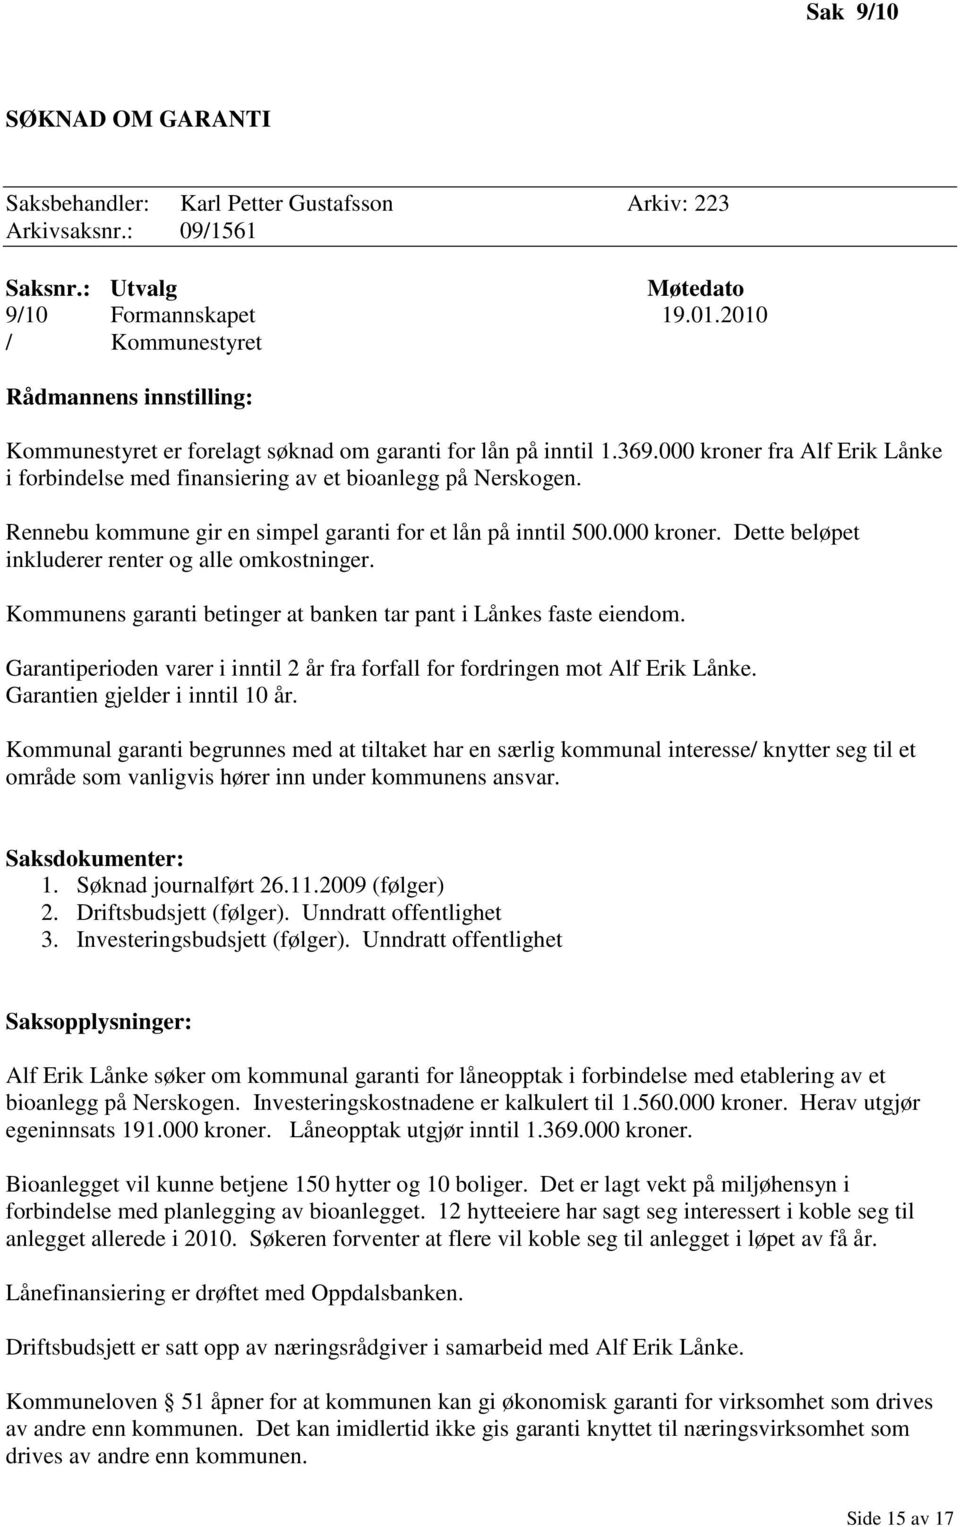 000 kroner fra Alf Erik Lånke i forbindelse med finansiering av et bioanlegg på Nerskogen. Rennebu kommune gir en simpel garanti for et lån på inntil 500.000 kroner. Dette beløpet inkluderer renter og alle omkostninger.